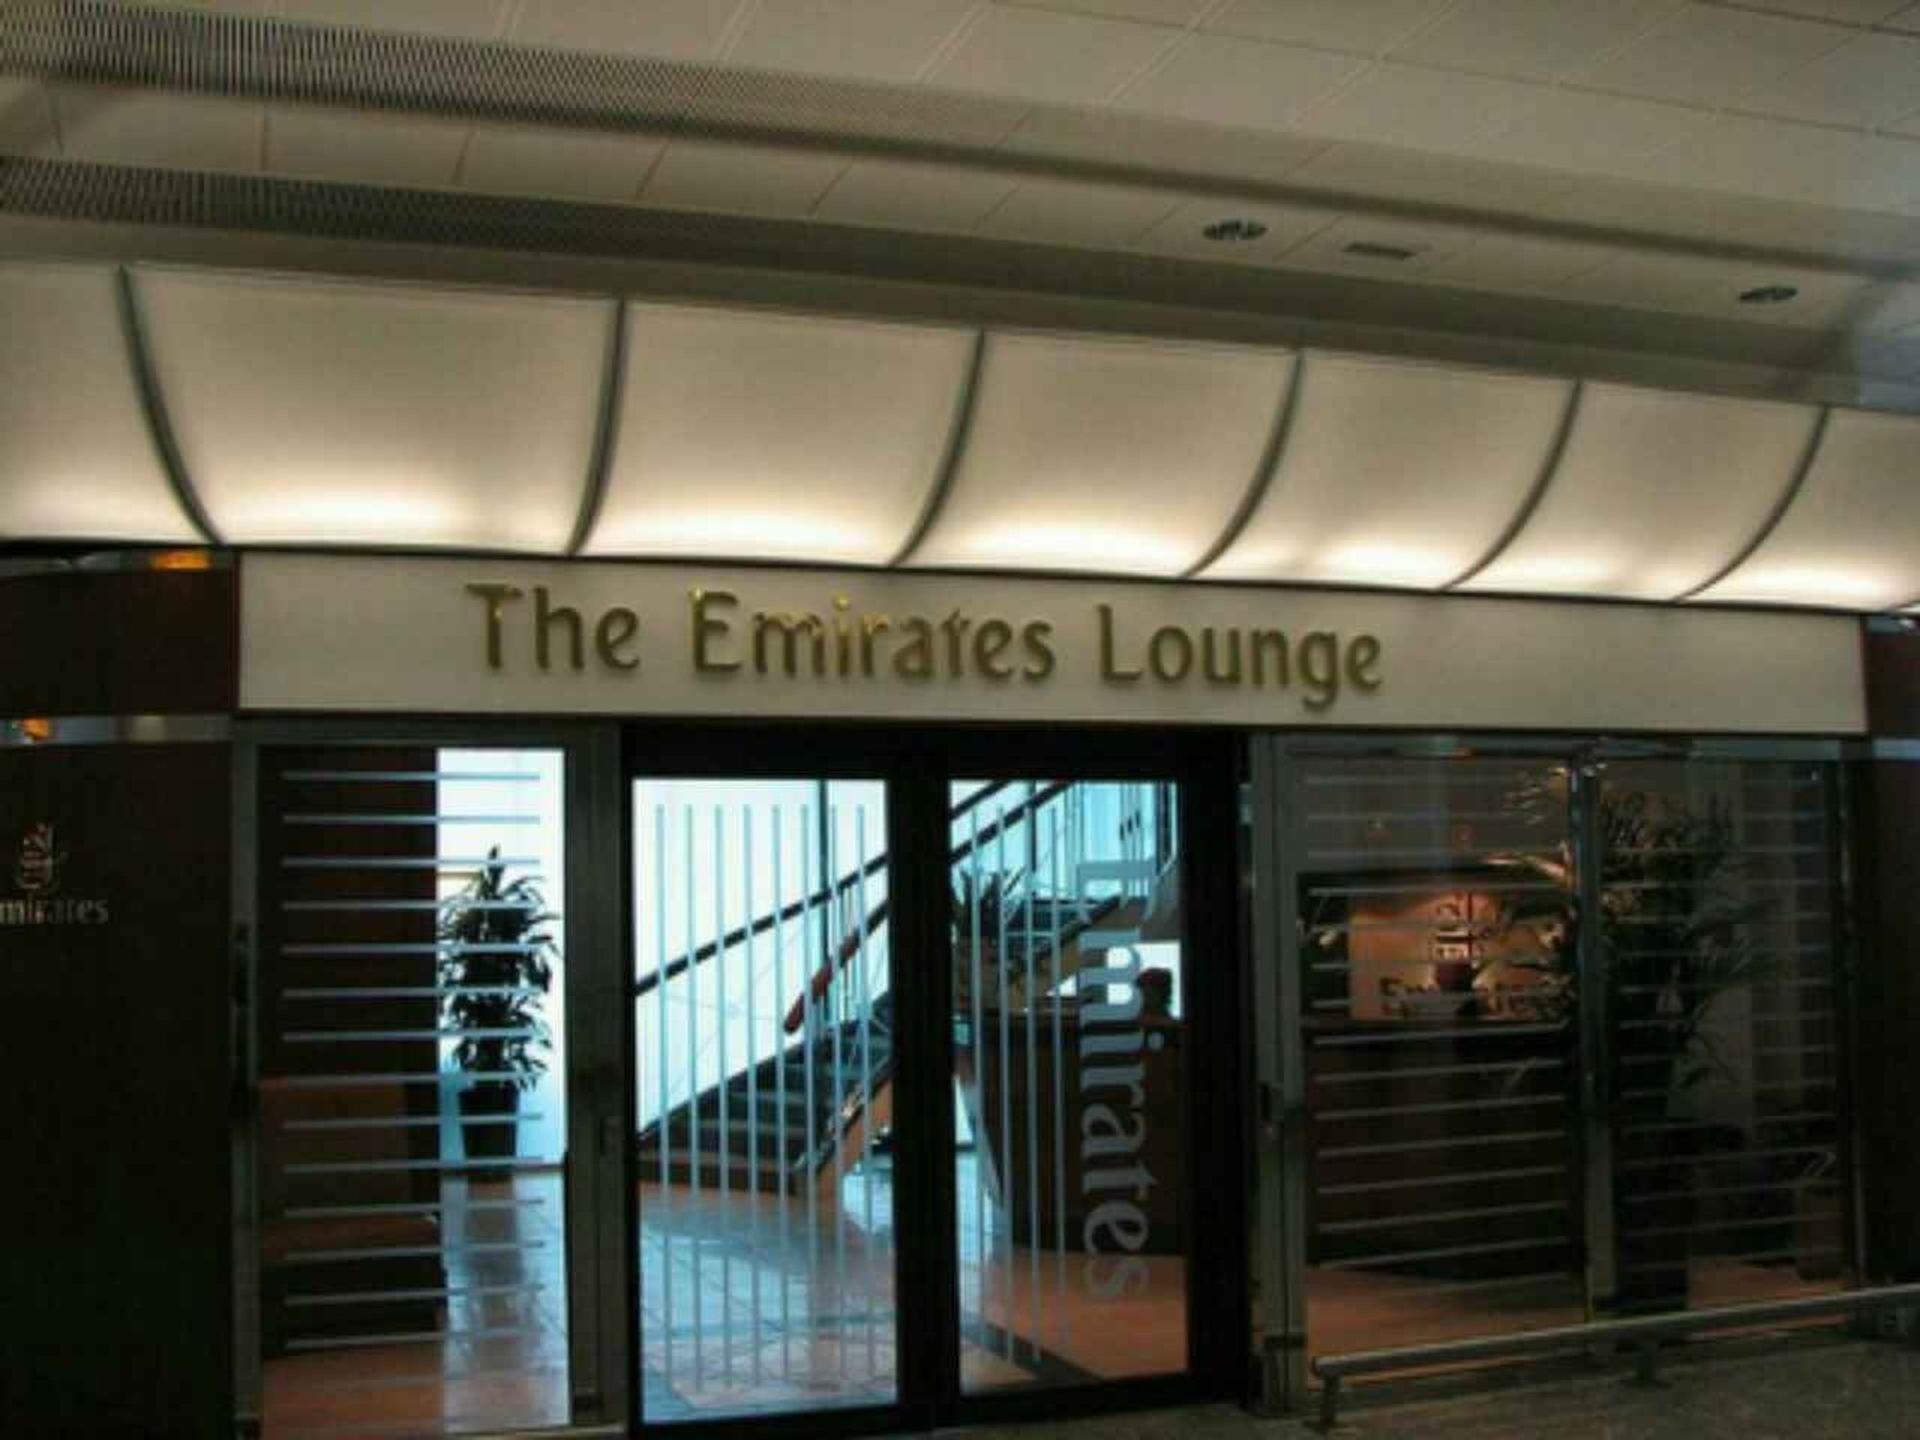 The Emirates Lounge image 9 of 10